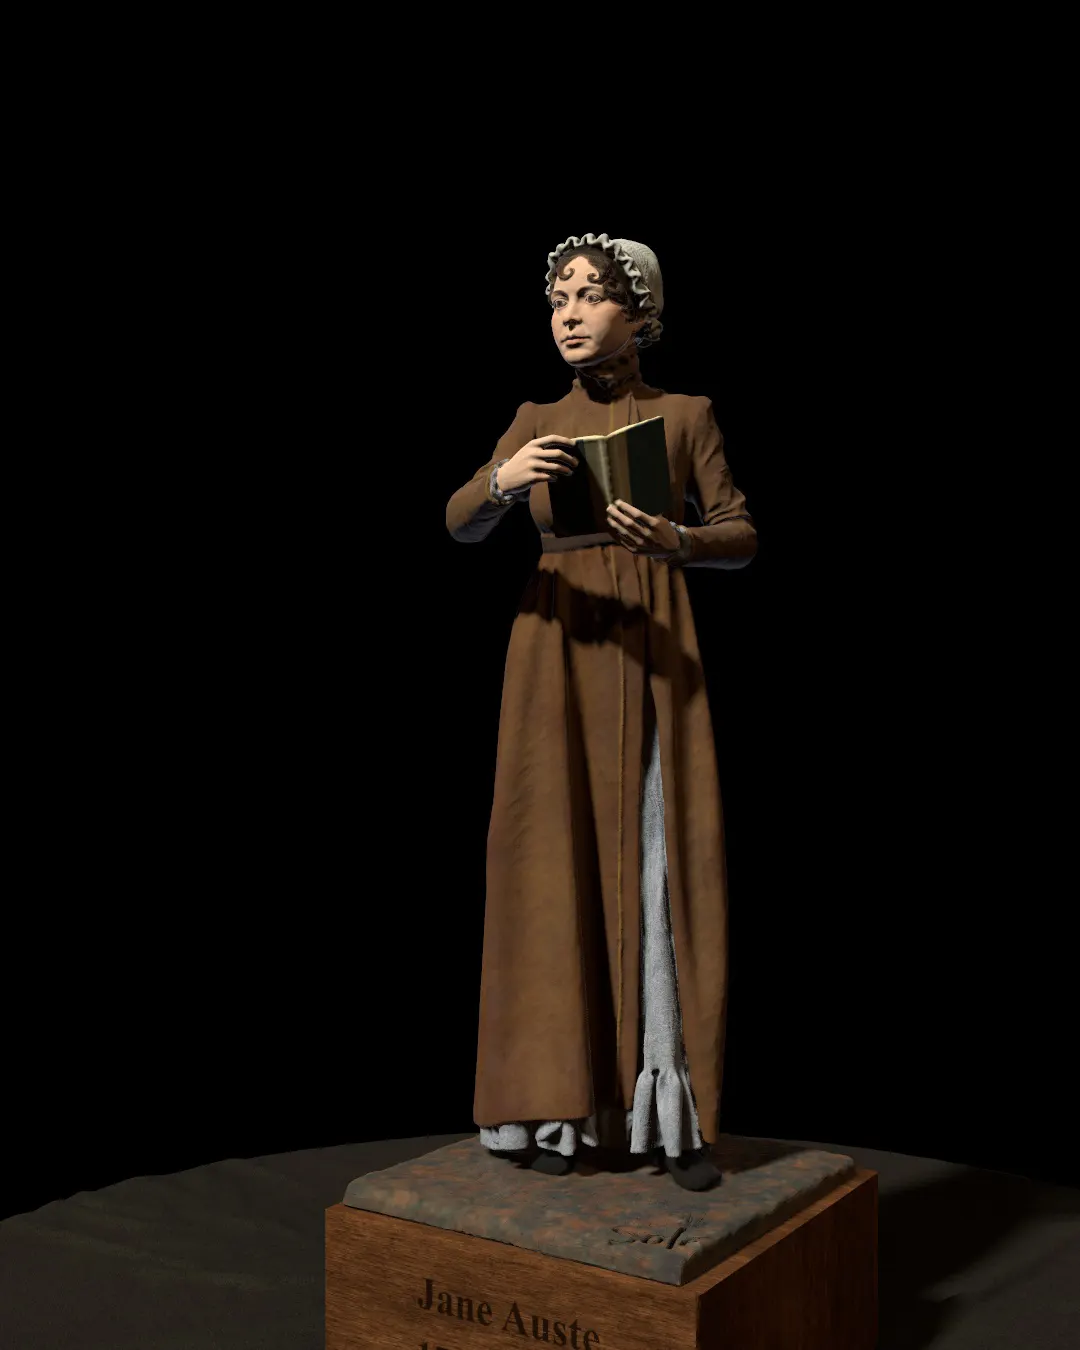 Jane-Austen-statue/Rendering-of-Jane-Austen-statue-modeled-by-Emil-Sole-5.webp